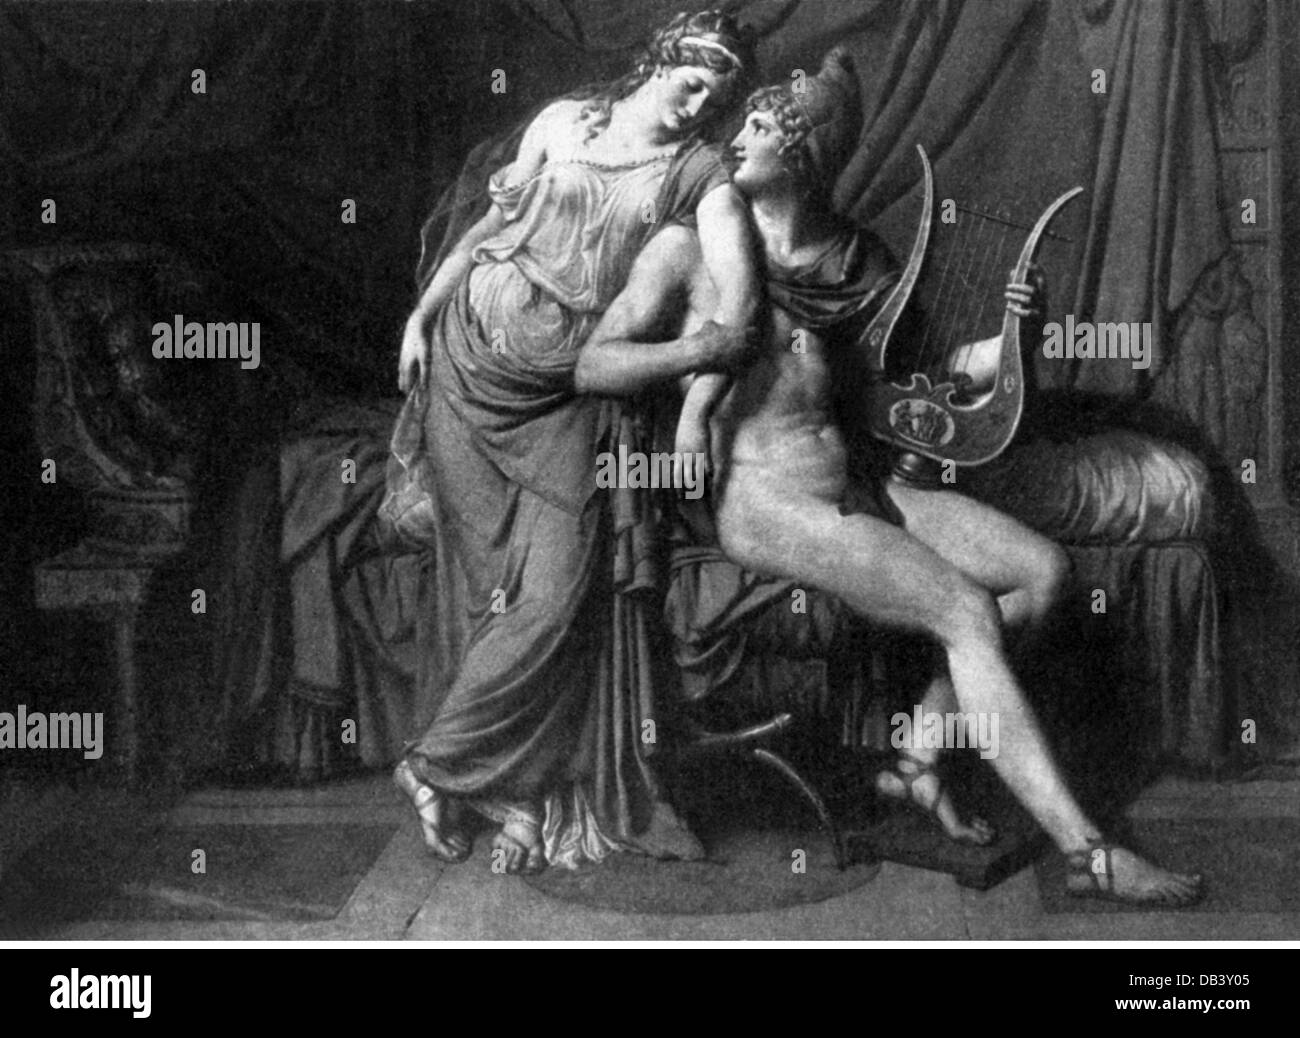 Paris, fils de Priam de Troy, figure légendaire grecque, pleine longueur, avec Helen, basée sur la peinture de Jacques Louis David, XIXe siècle, Louvre, Paris, Banque D'Images